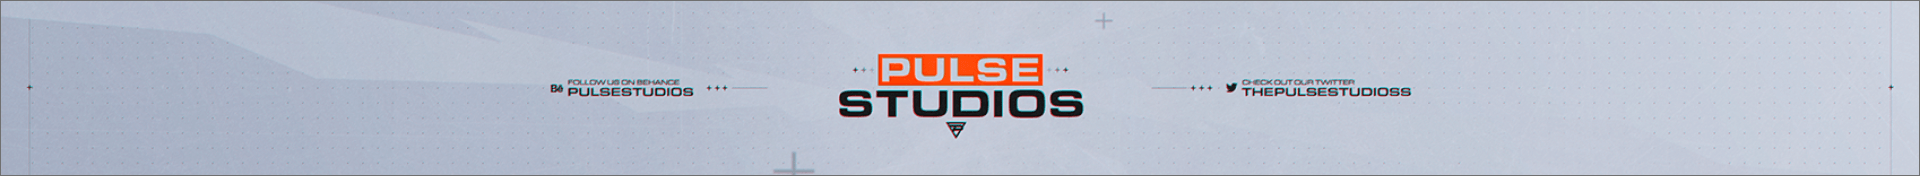 pulse studios banner